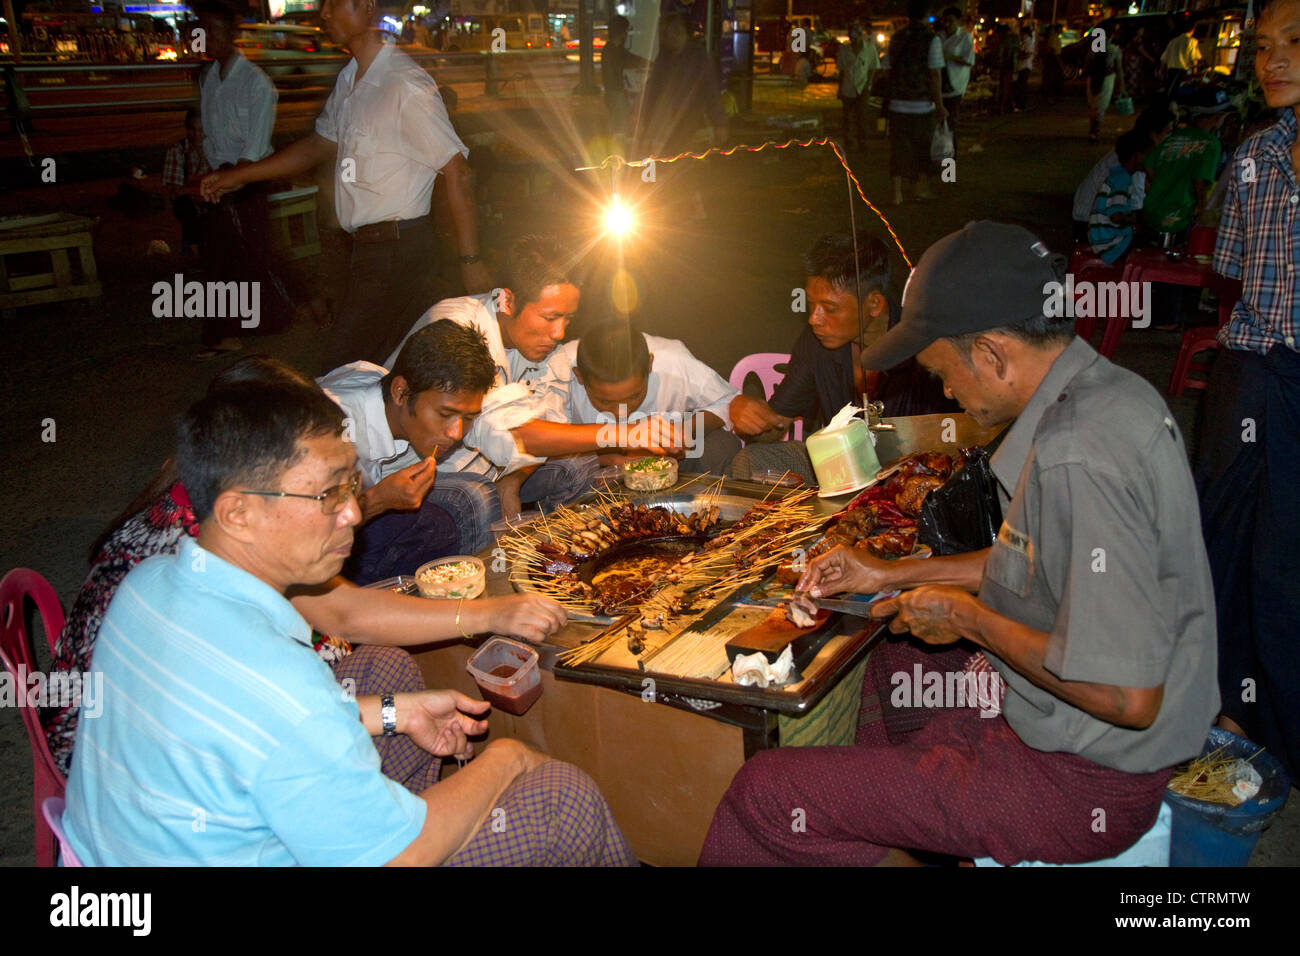 Popolo birmano bere e mangiare all'aperto vicino alla Sule Paya situato nel cuore del centro cittadino di (Rangoon) Yangon, Birmania (Myanmar). Foto Stock